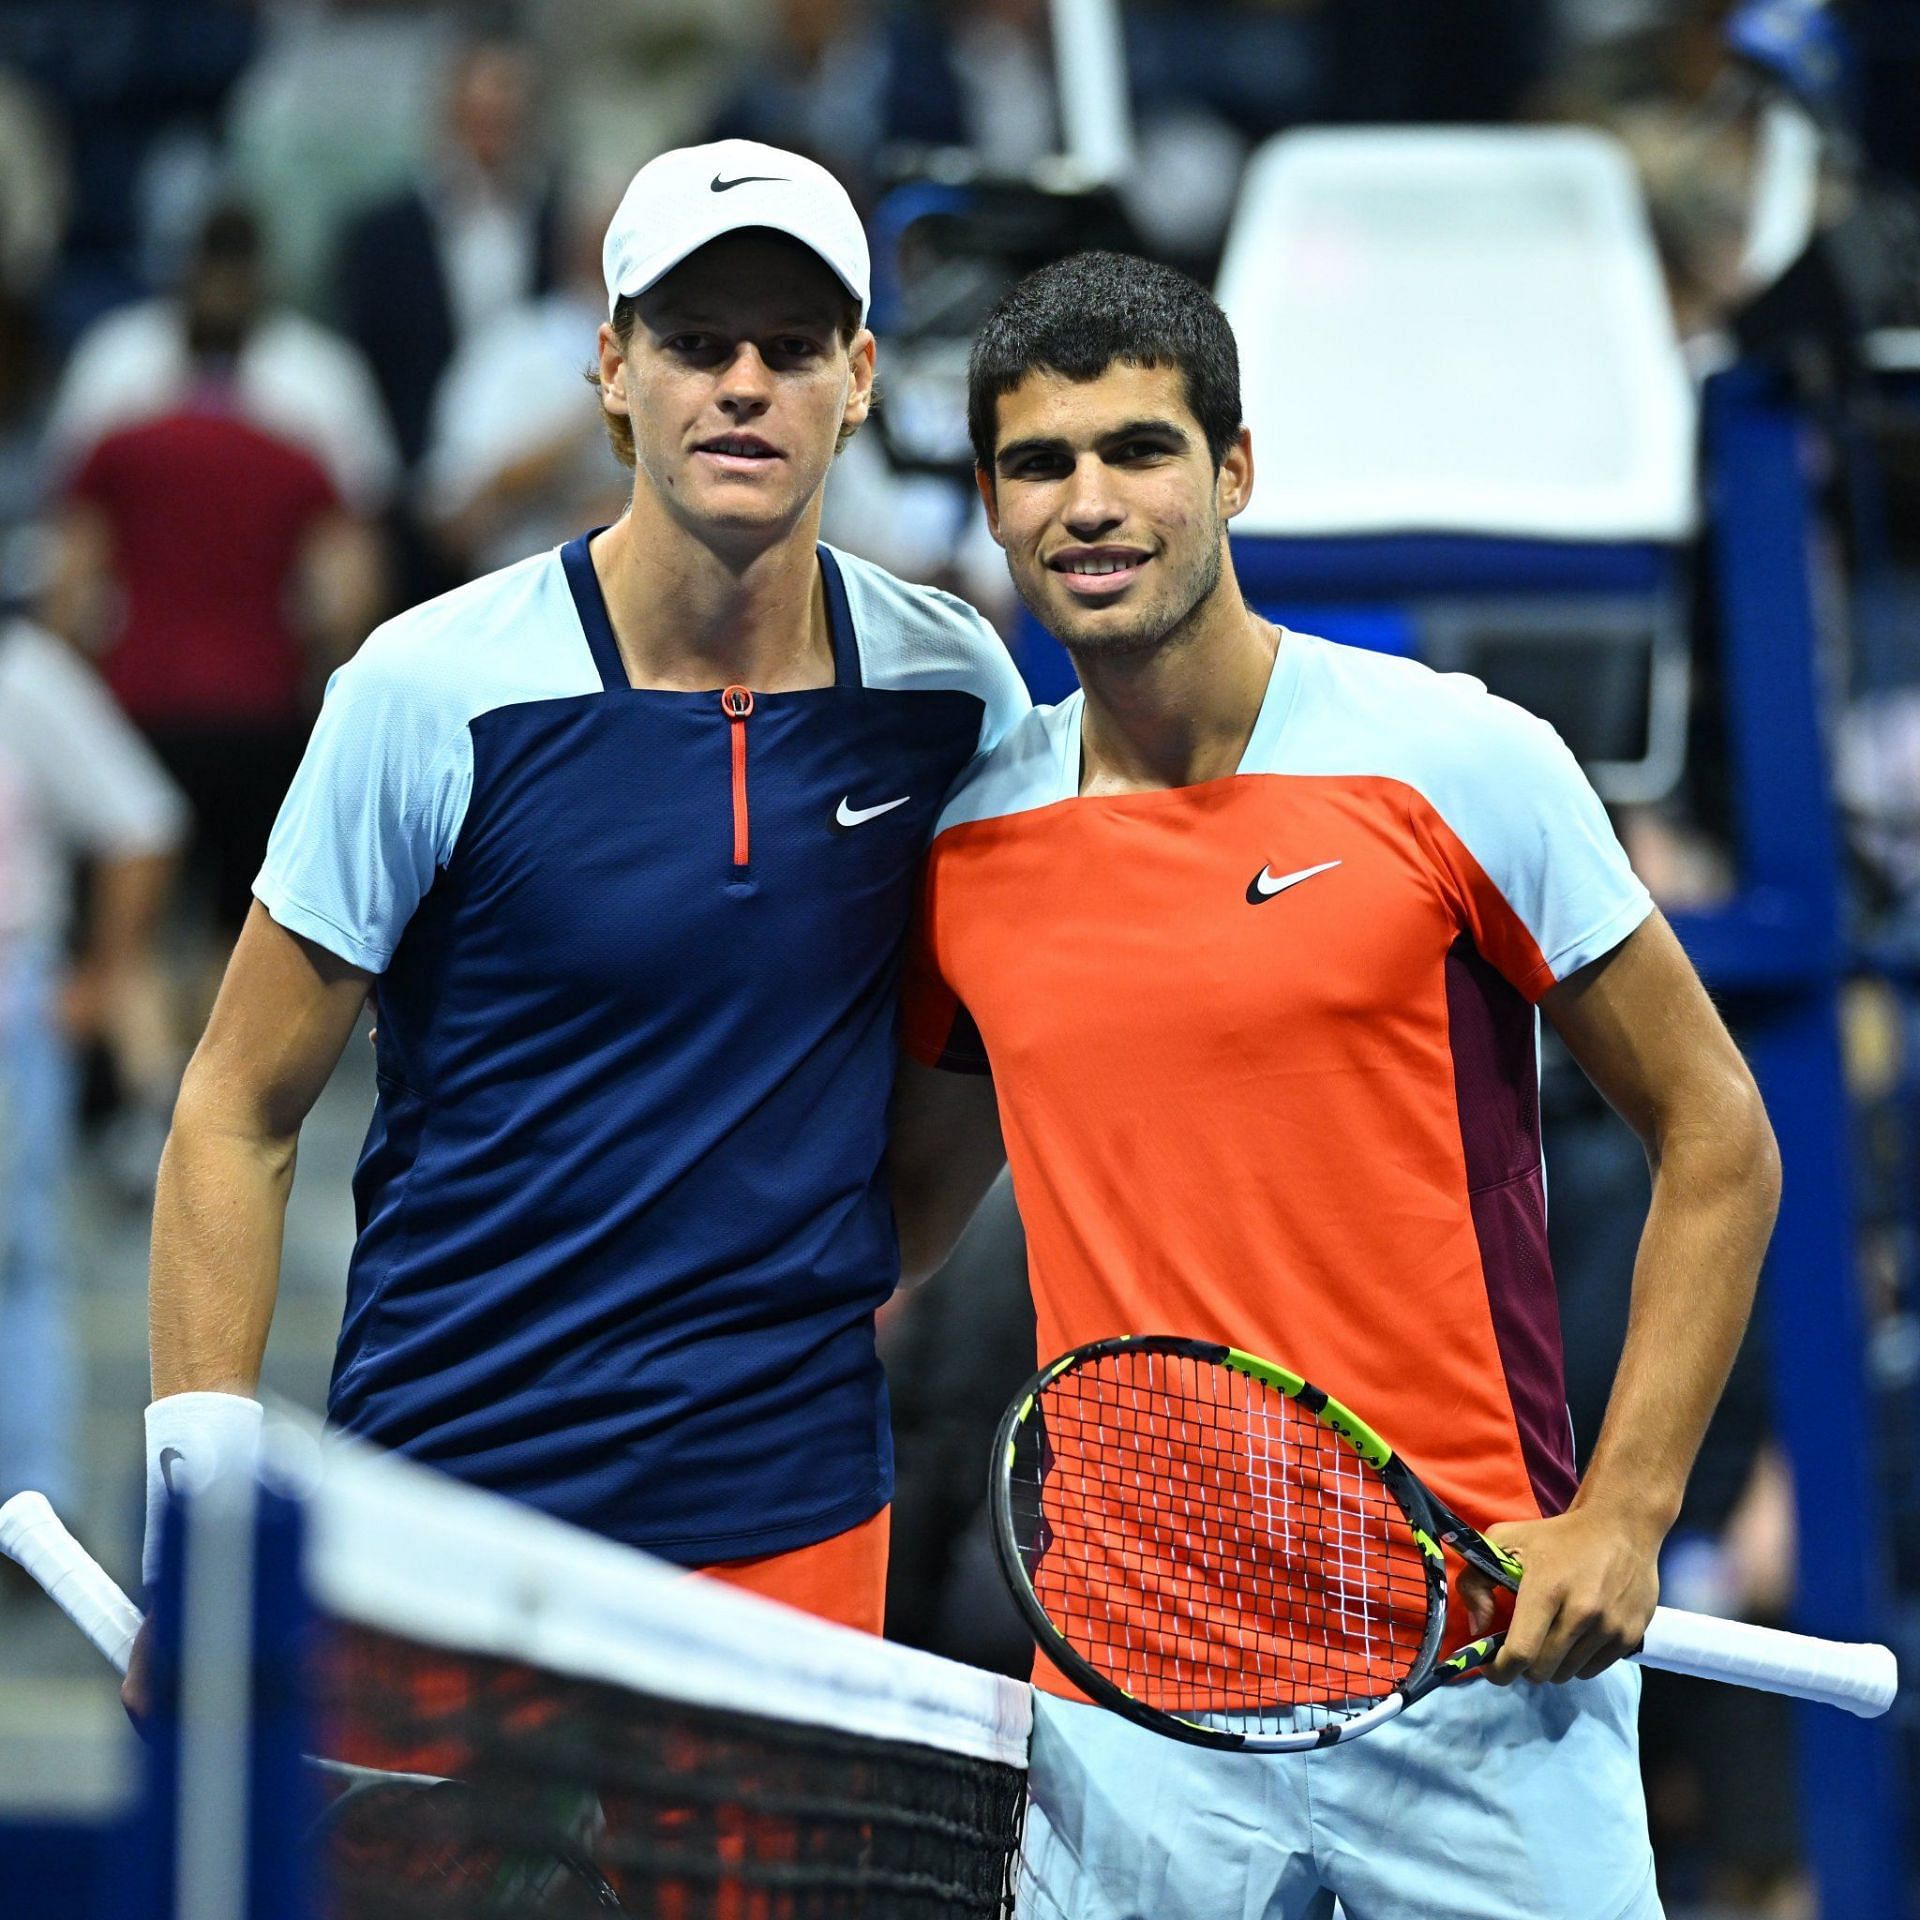 21 साल के सिनर (बाएं) और 19 साल के अल्कराज के इस मैच ने हर टेनिस प्रेमी का दिल जीत लिया।